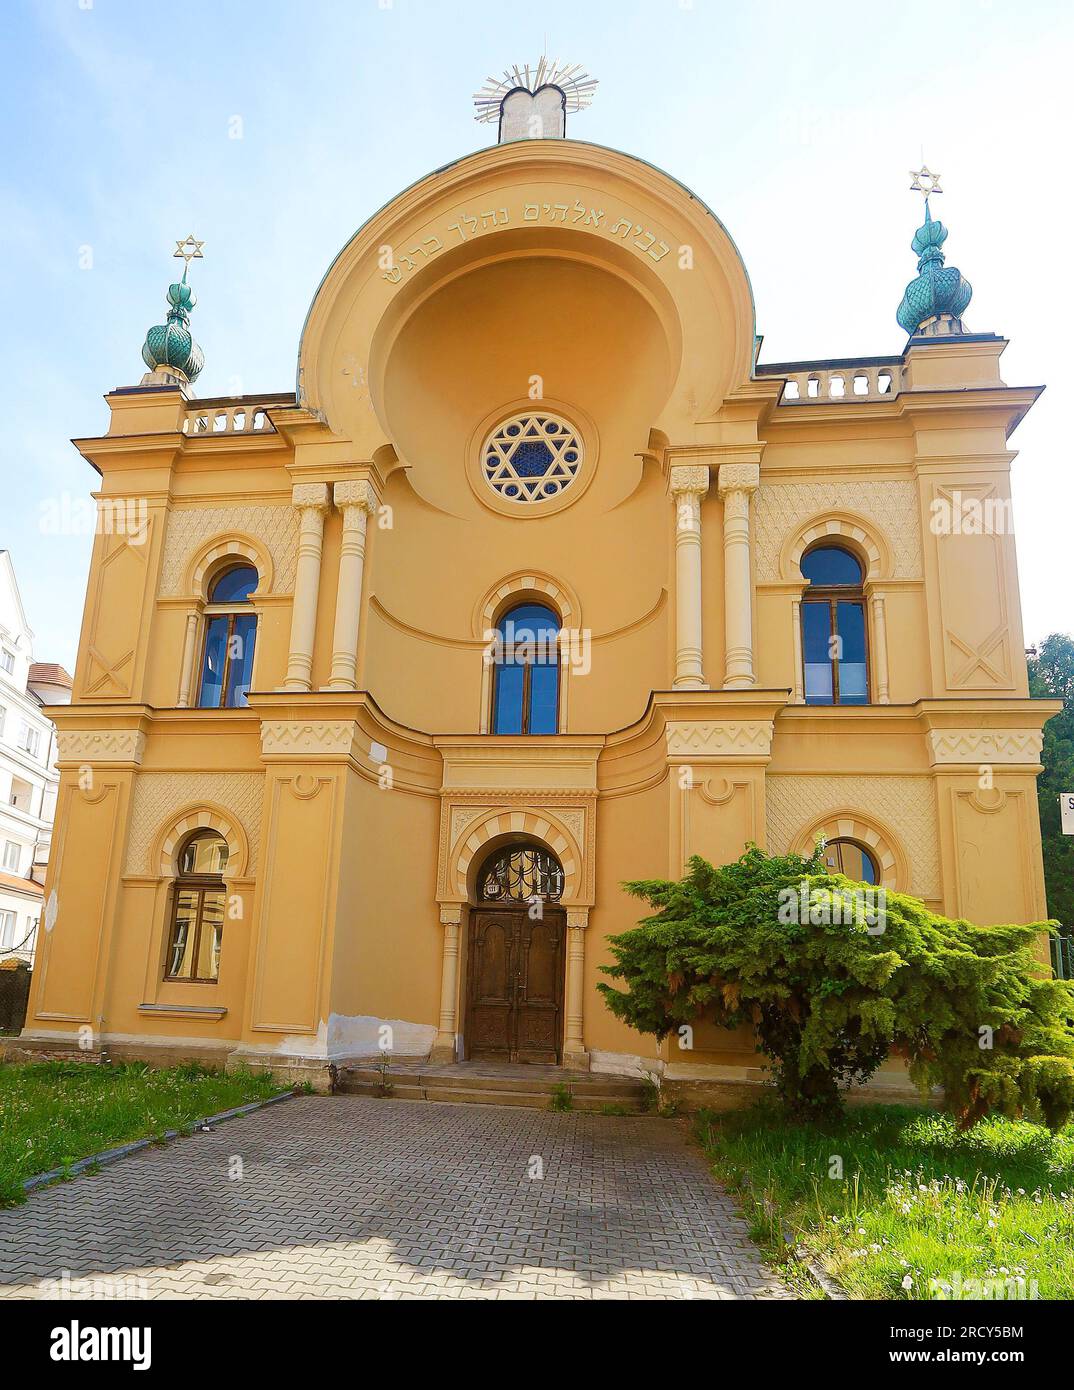 La sinagoga in stile moresco a Caslav fu costruita nel 1898-1900. Dopo la guerra fu utilizzata come magazzino, ora è stata restituita agli ebrei ca Foto Stock